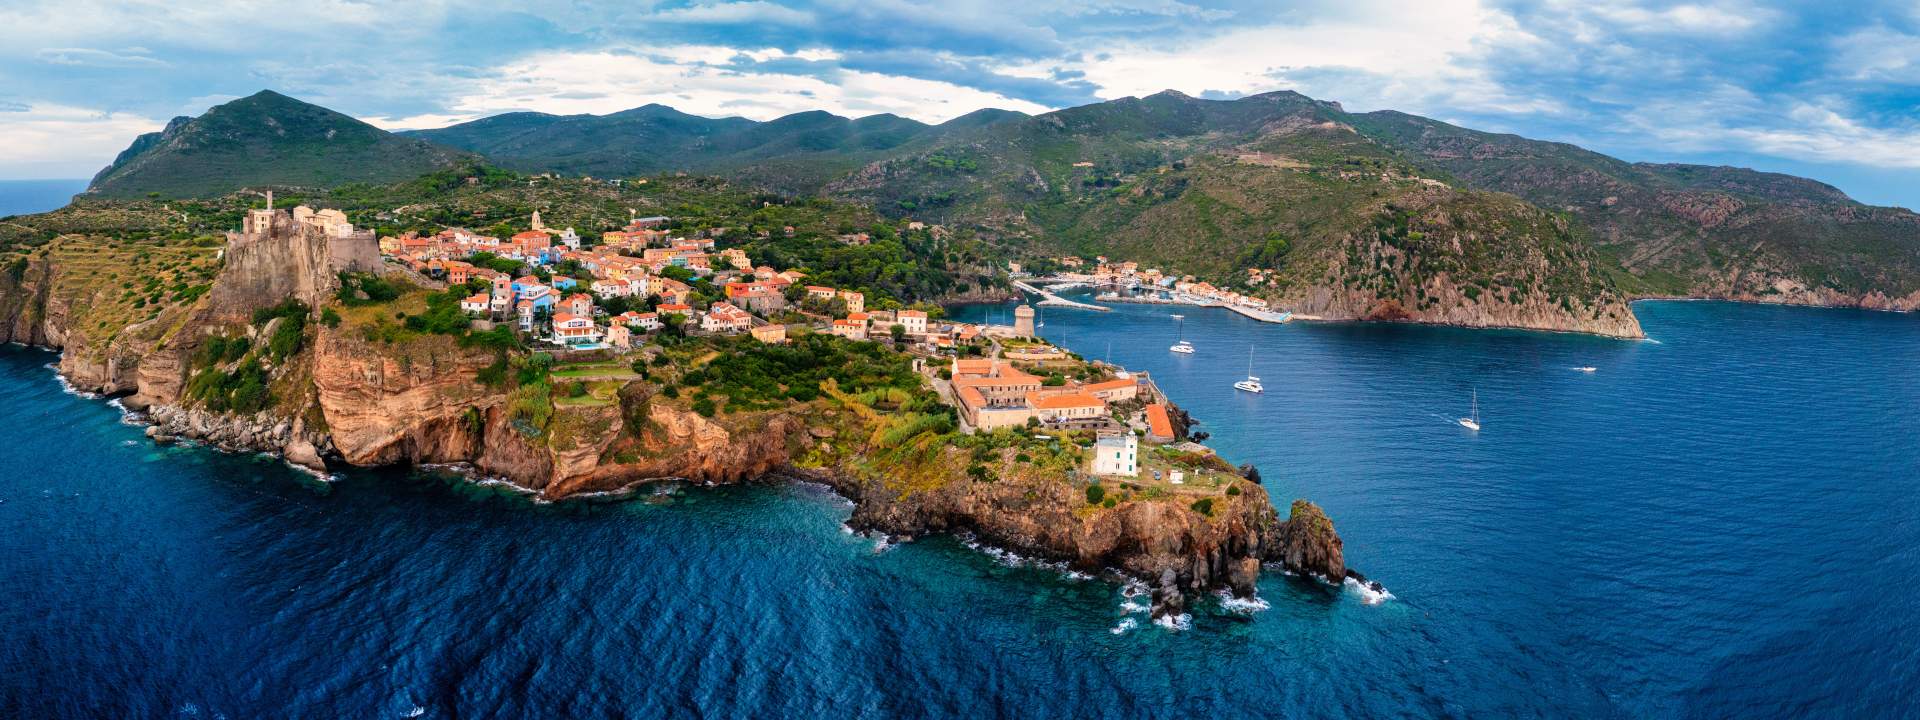 Segeln Sie mit dem Katamaran um die Inseln Elba & Capraia